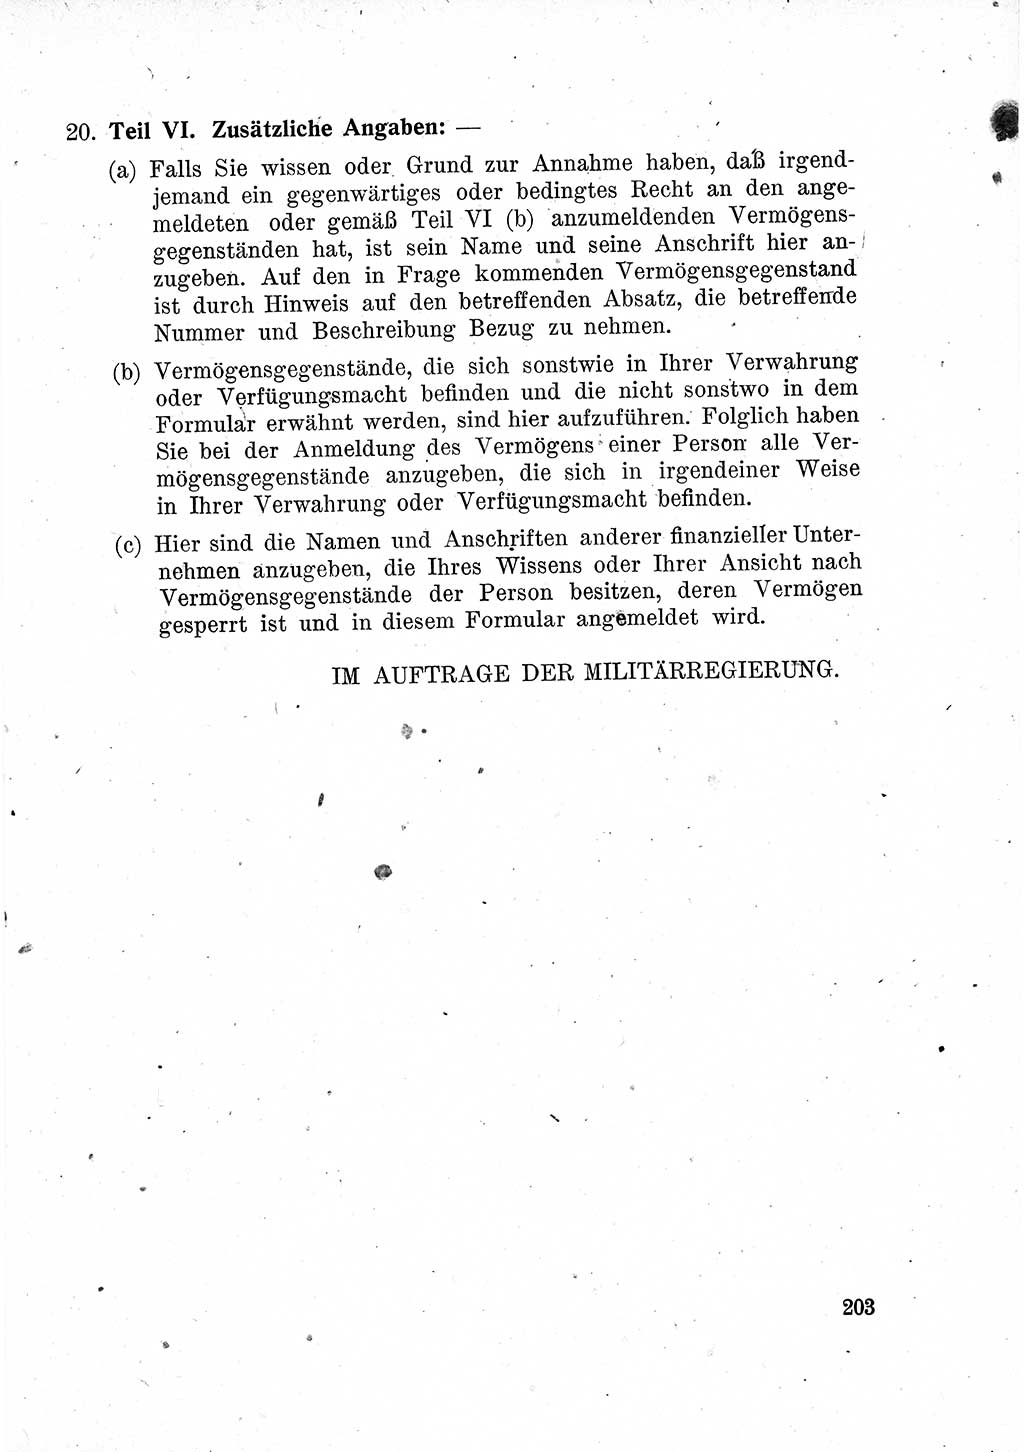 Das Recht der Besatzungsmacht (Deutschland), Proklamationen, Deklerationen, Verordnungen, Gesetze und Bekanntmachungen 1947, Seite 203 (R. Bes. Dtl. 1947, S. 203)